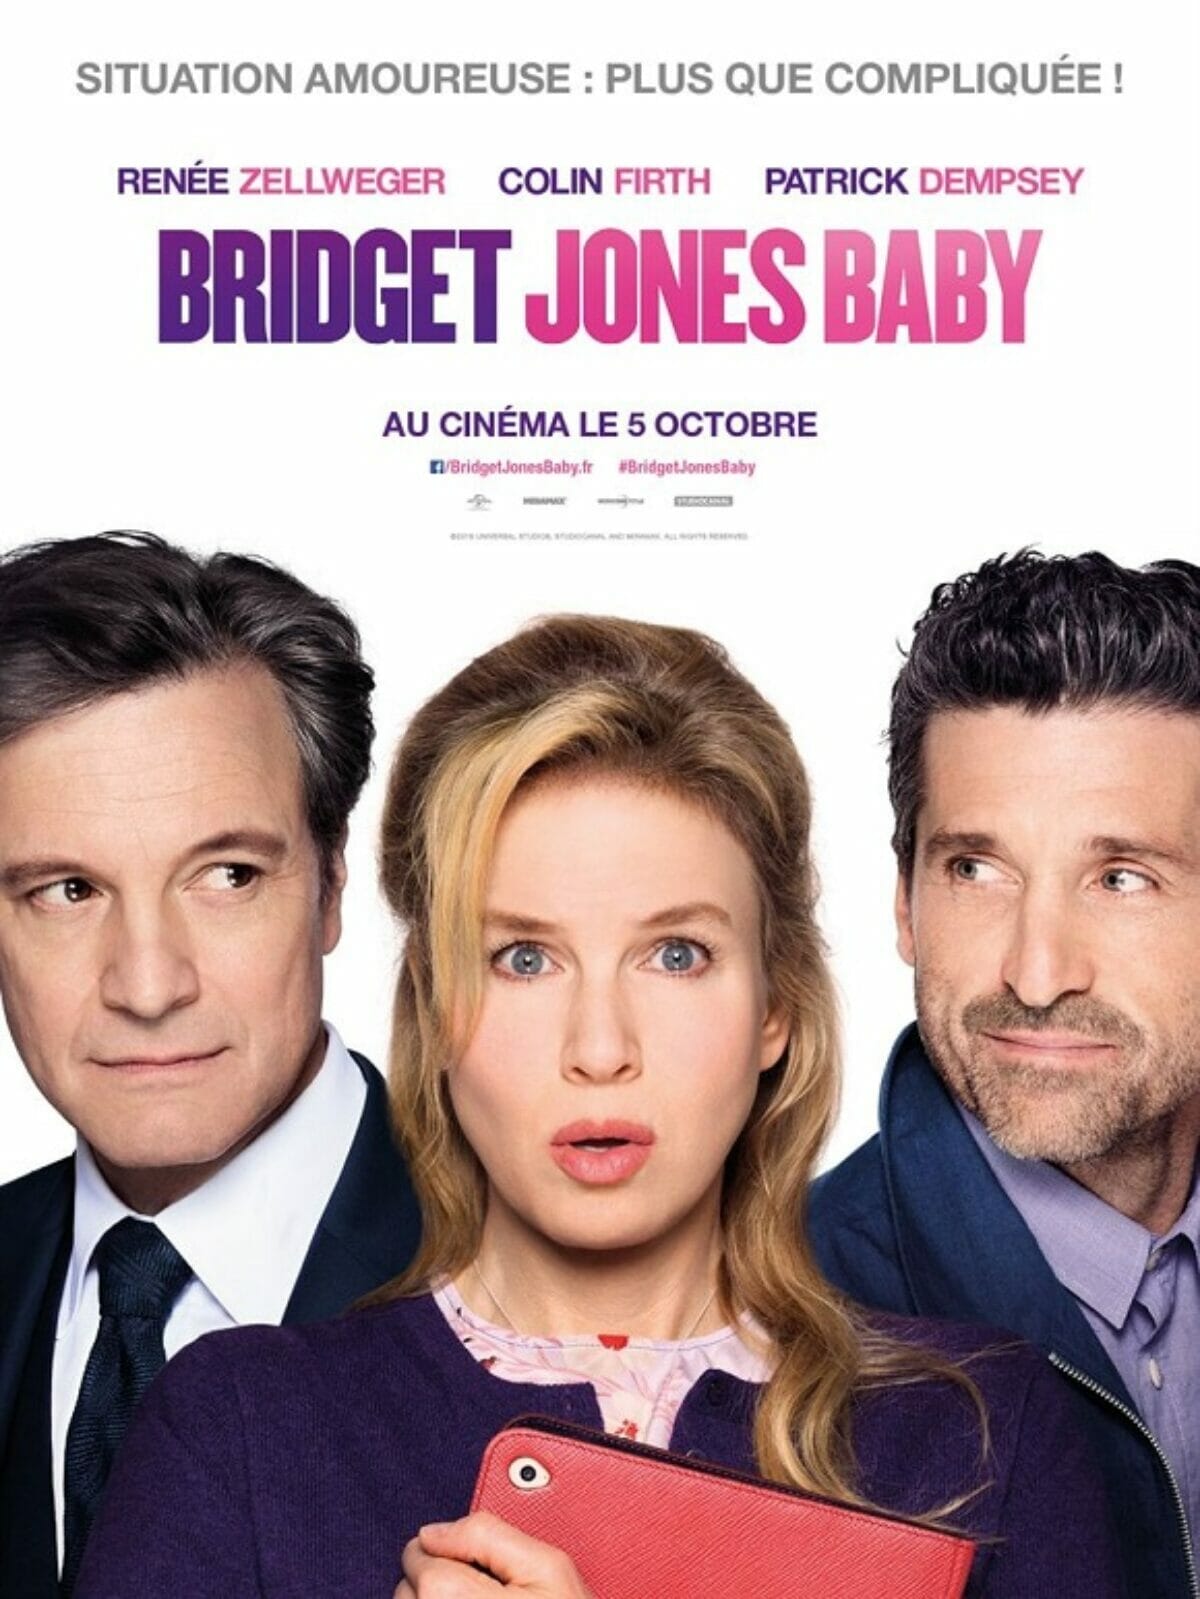 bridget-jones-baby-poster